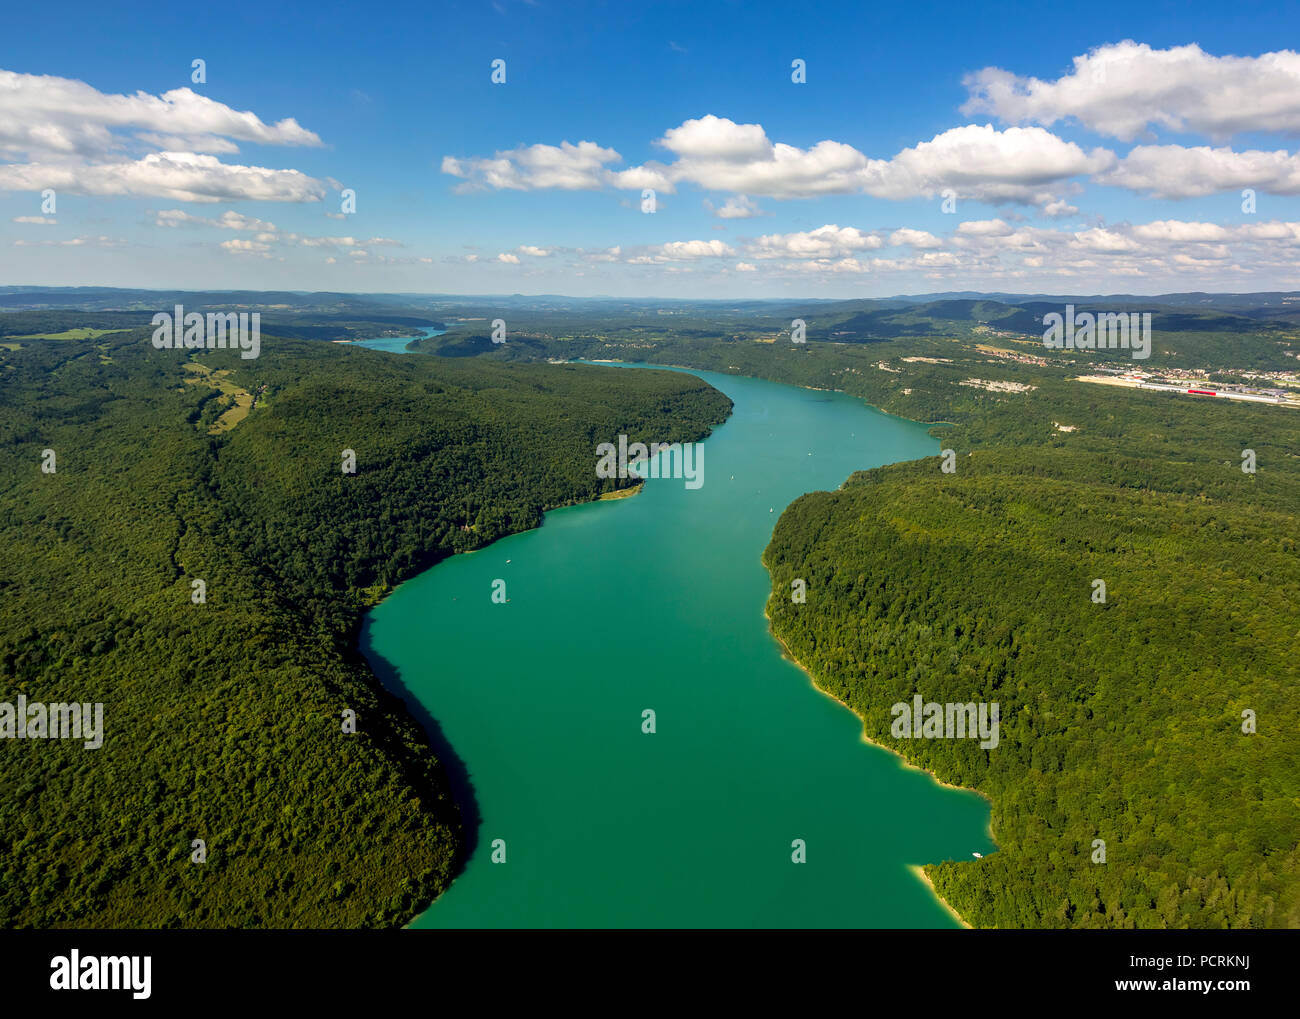 Reservoir, Lac de Vouglans, lake, Moirans-en-Montagne, Jura department, Bourgogne-Franche-Comté, France Stock Photo